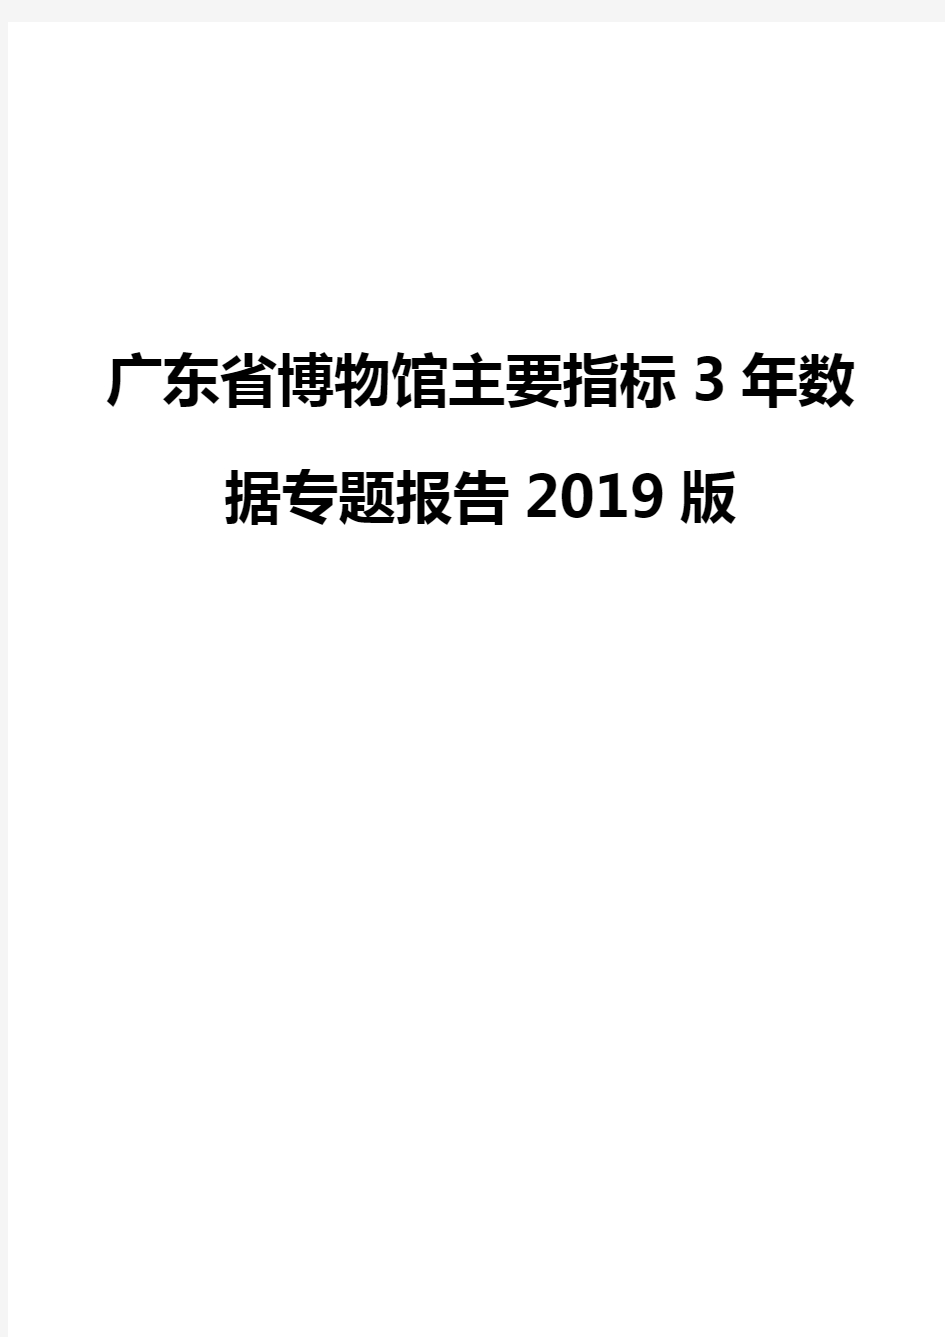 广东省博物馆主要指标3年数据专题报告2019版